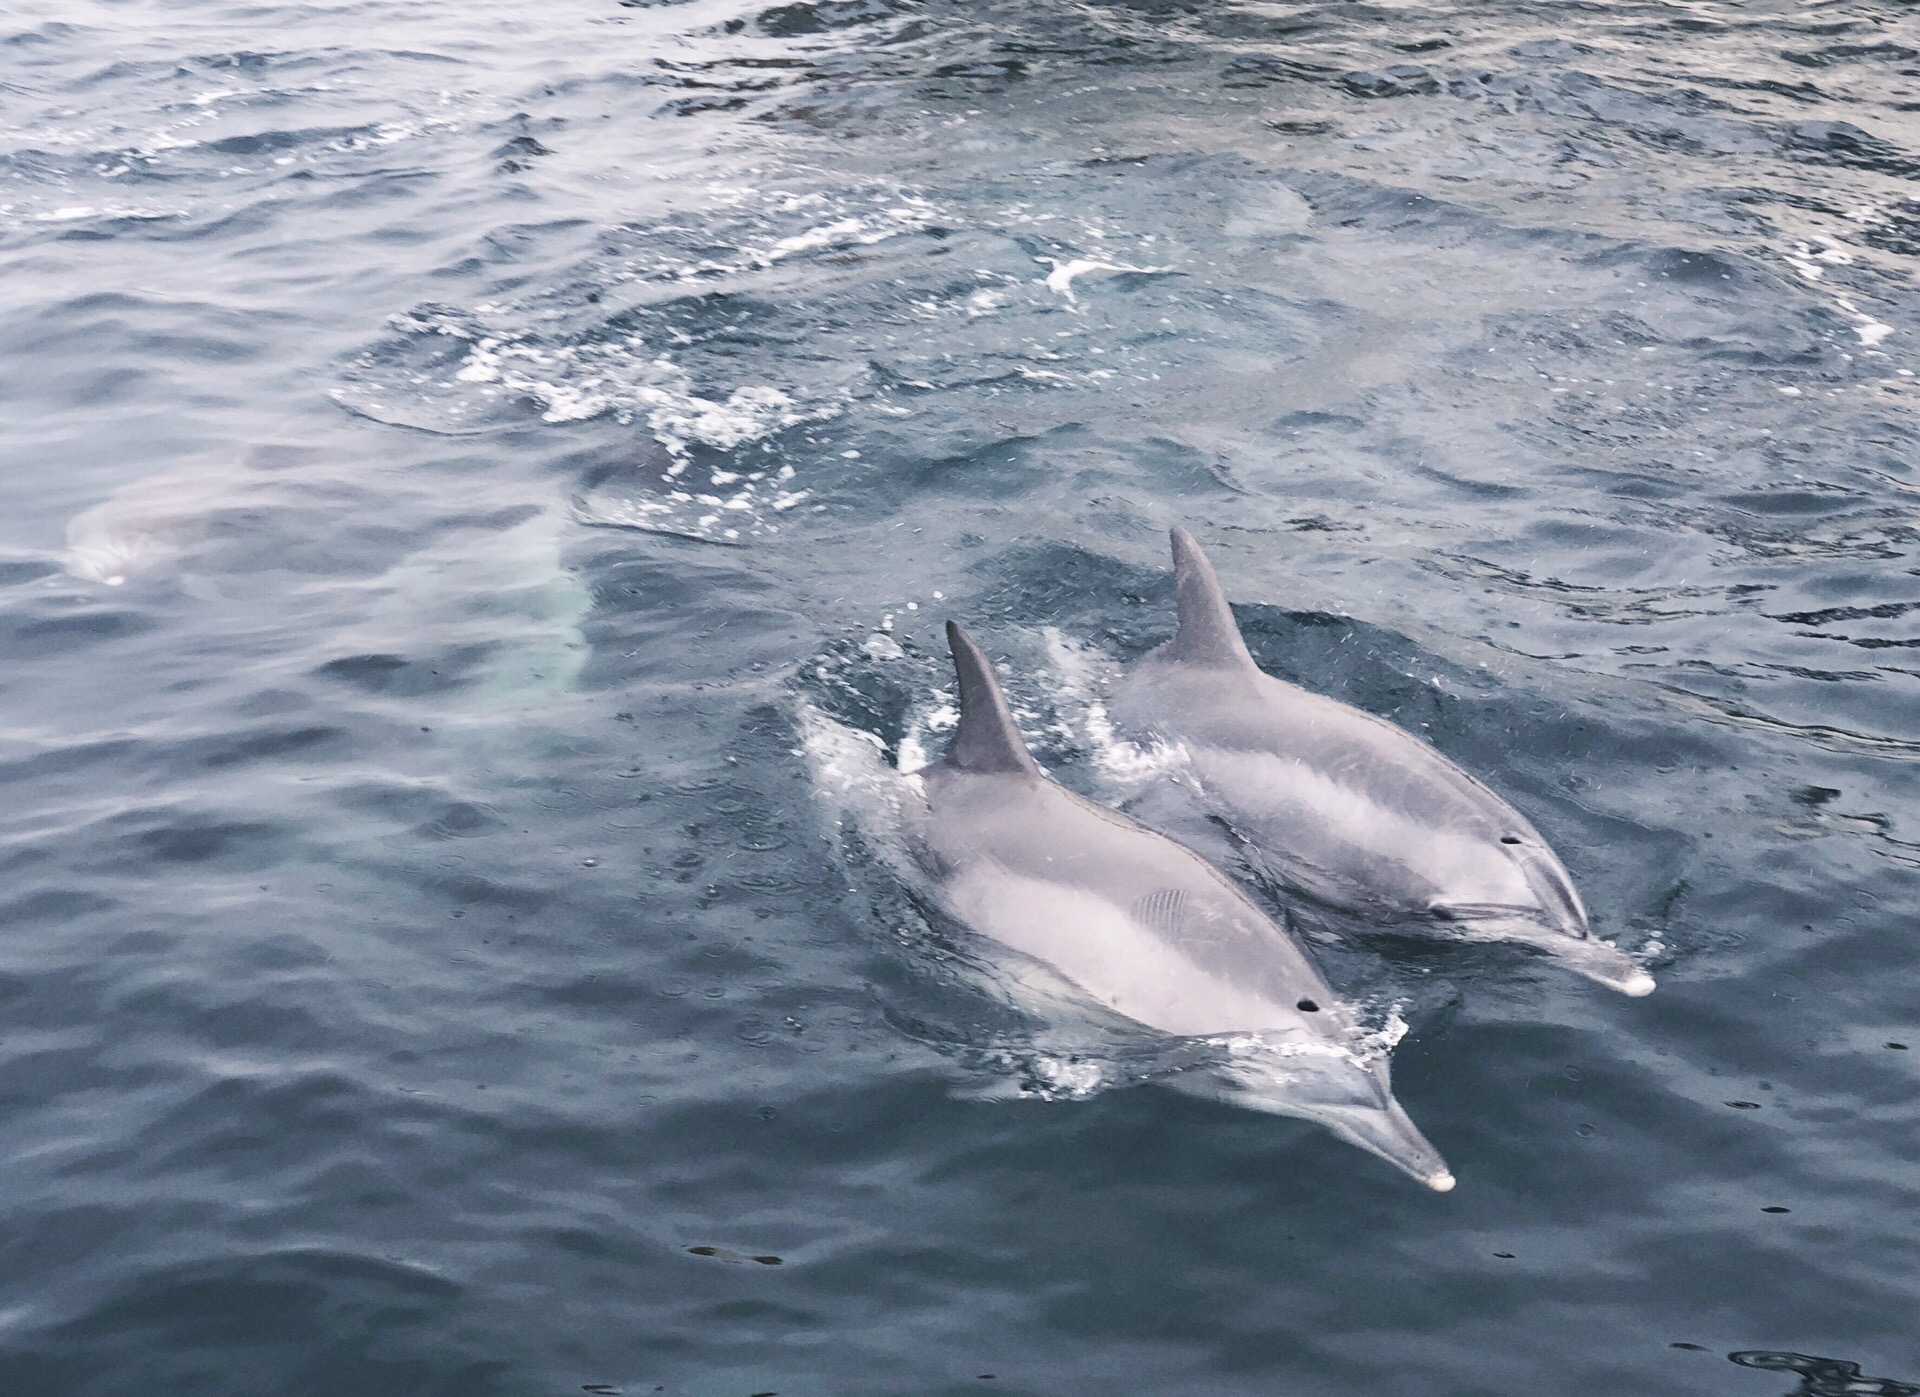 有明海区域常年有300只以上的海豚🐬群聚居。 虽更靠近熊本，但实际上船点在长崎的岛原港。 几乎不用技